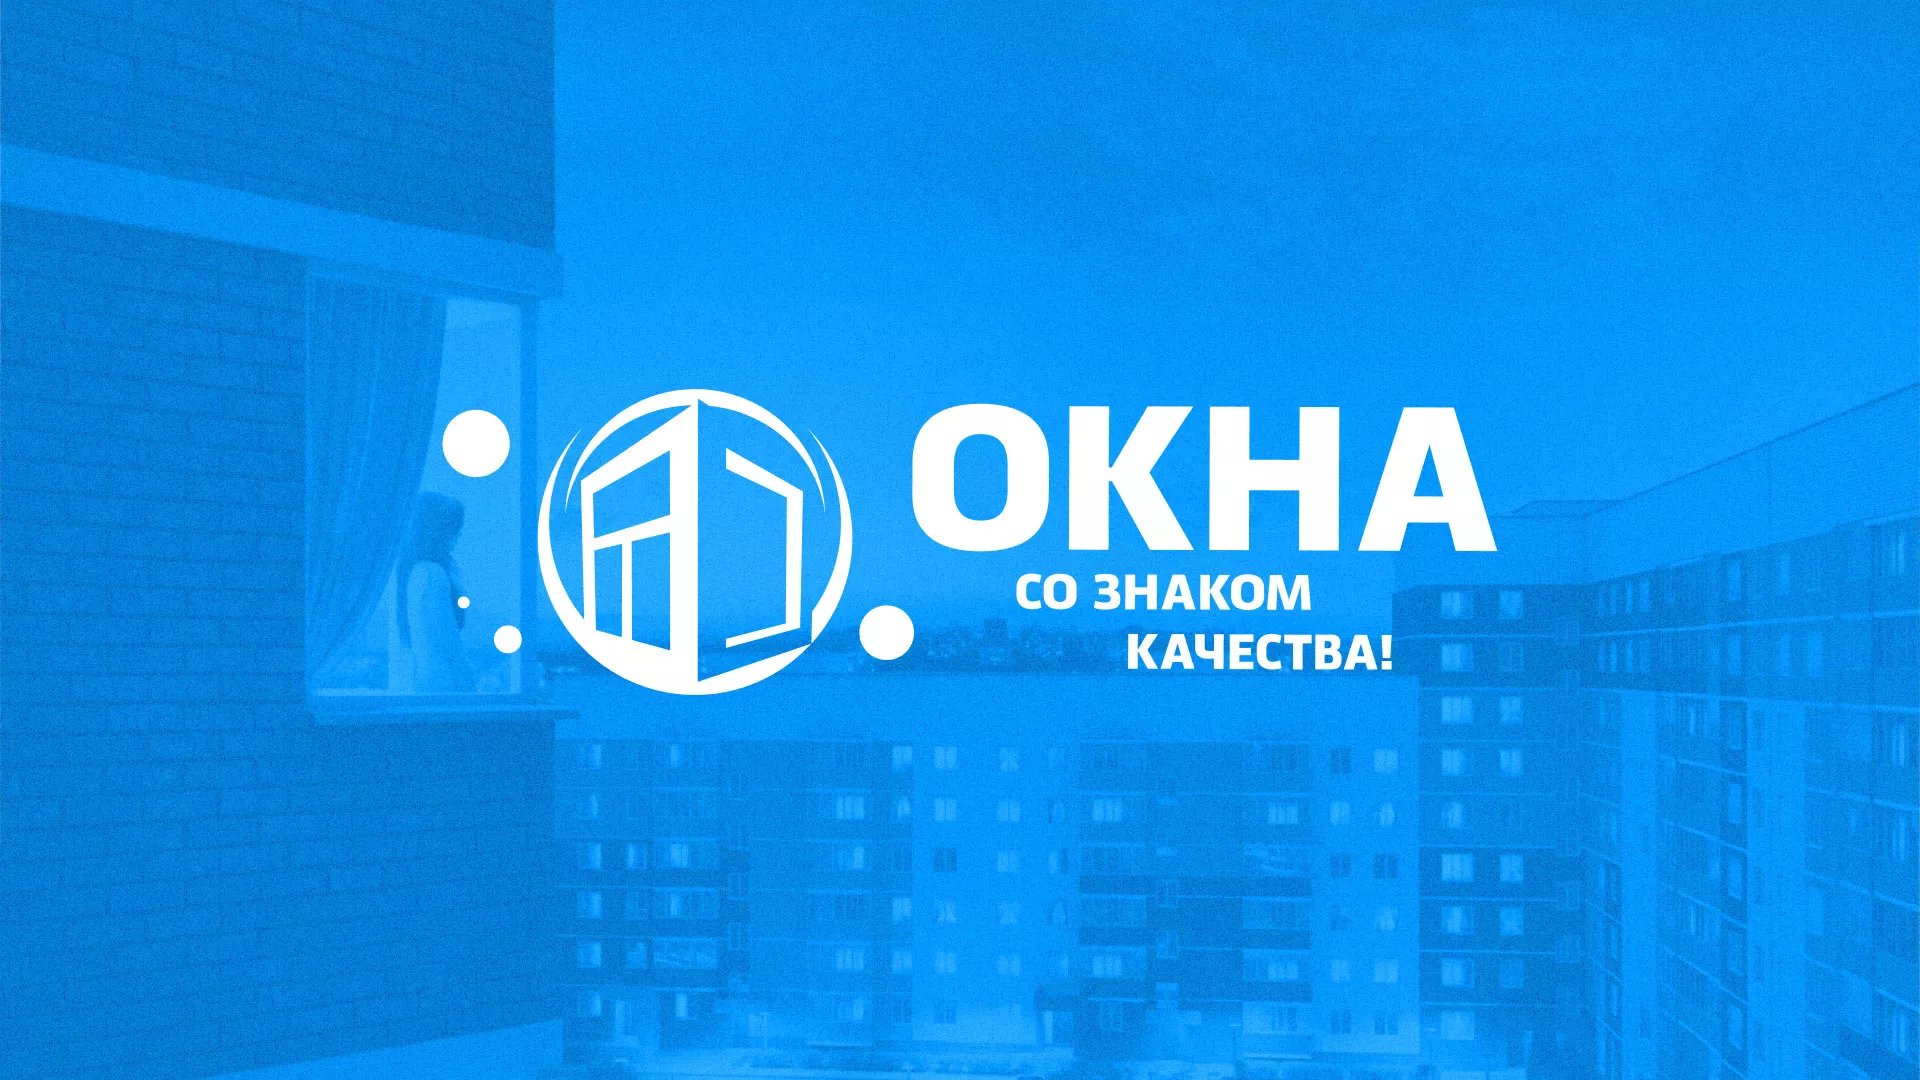 Создание сайта компании «Окна ВИДО» в Чкаловском